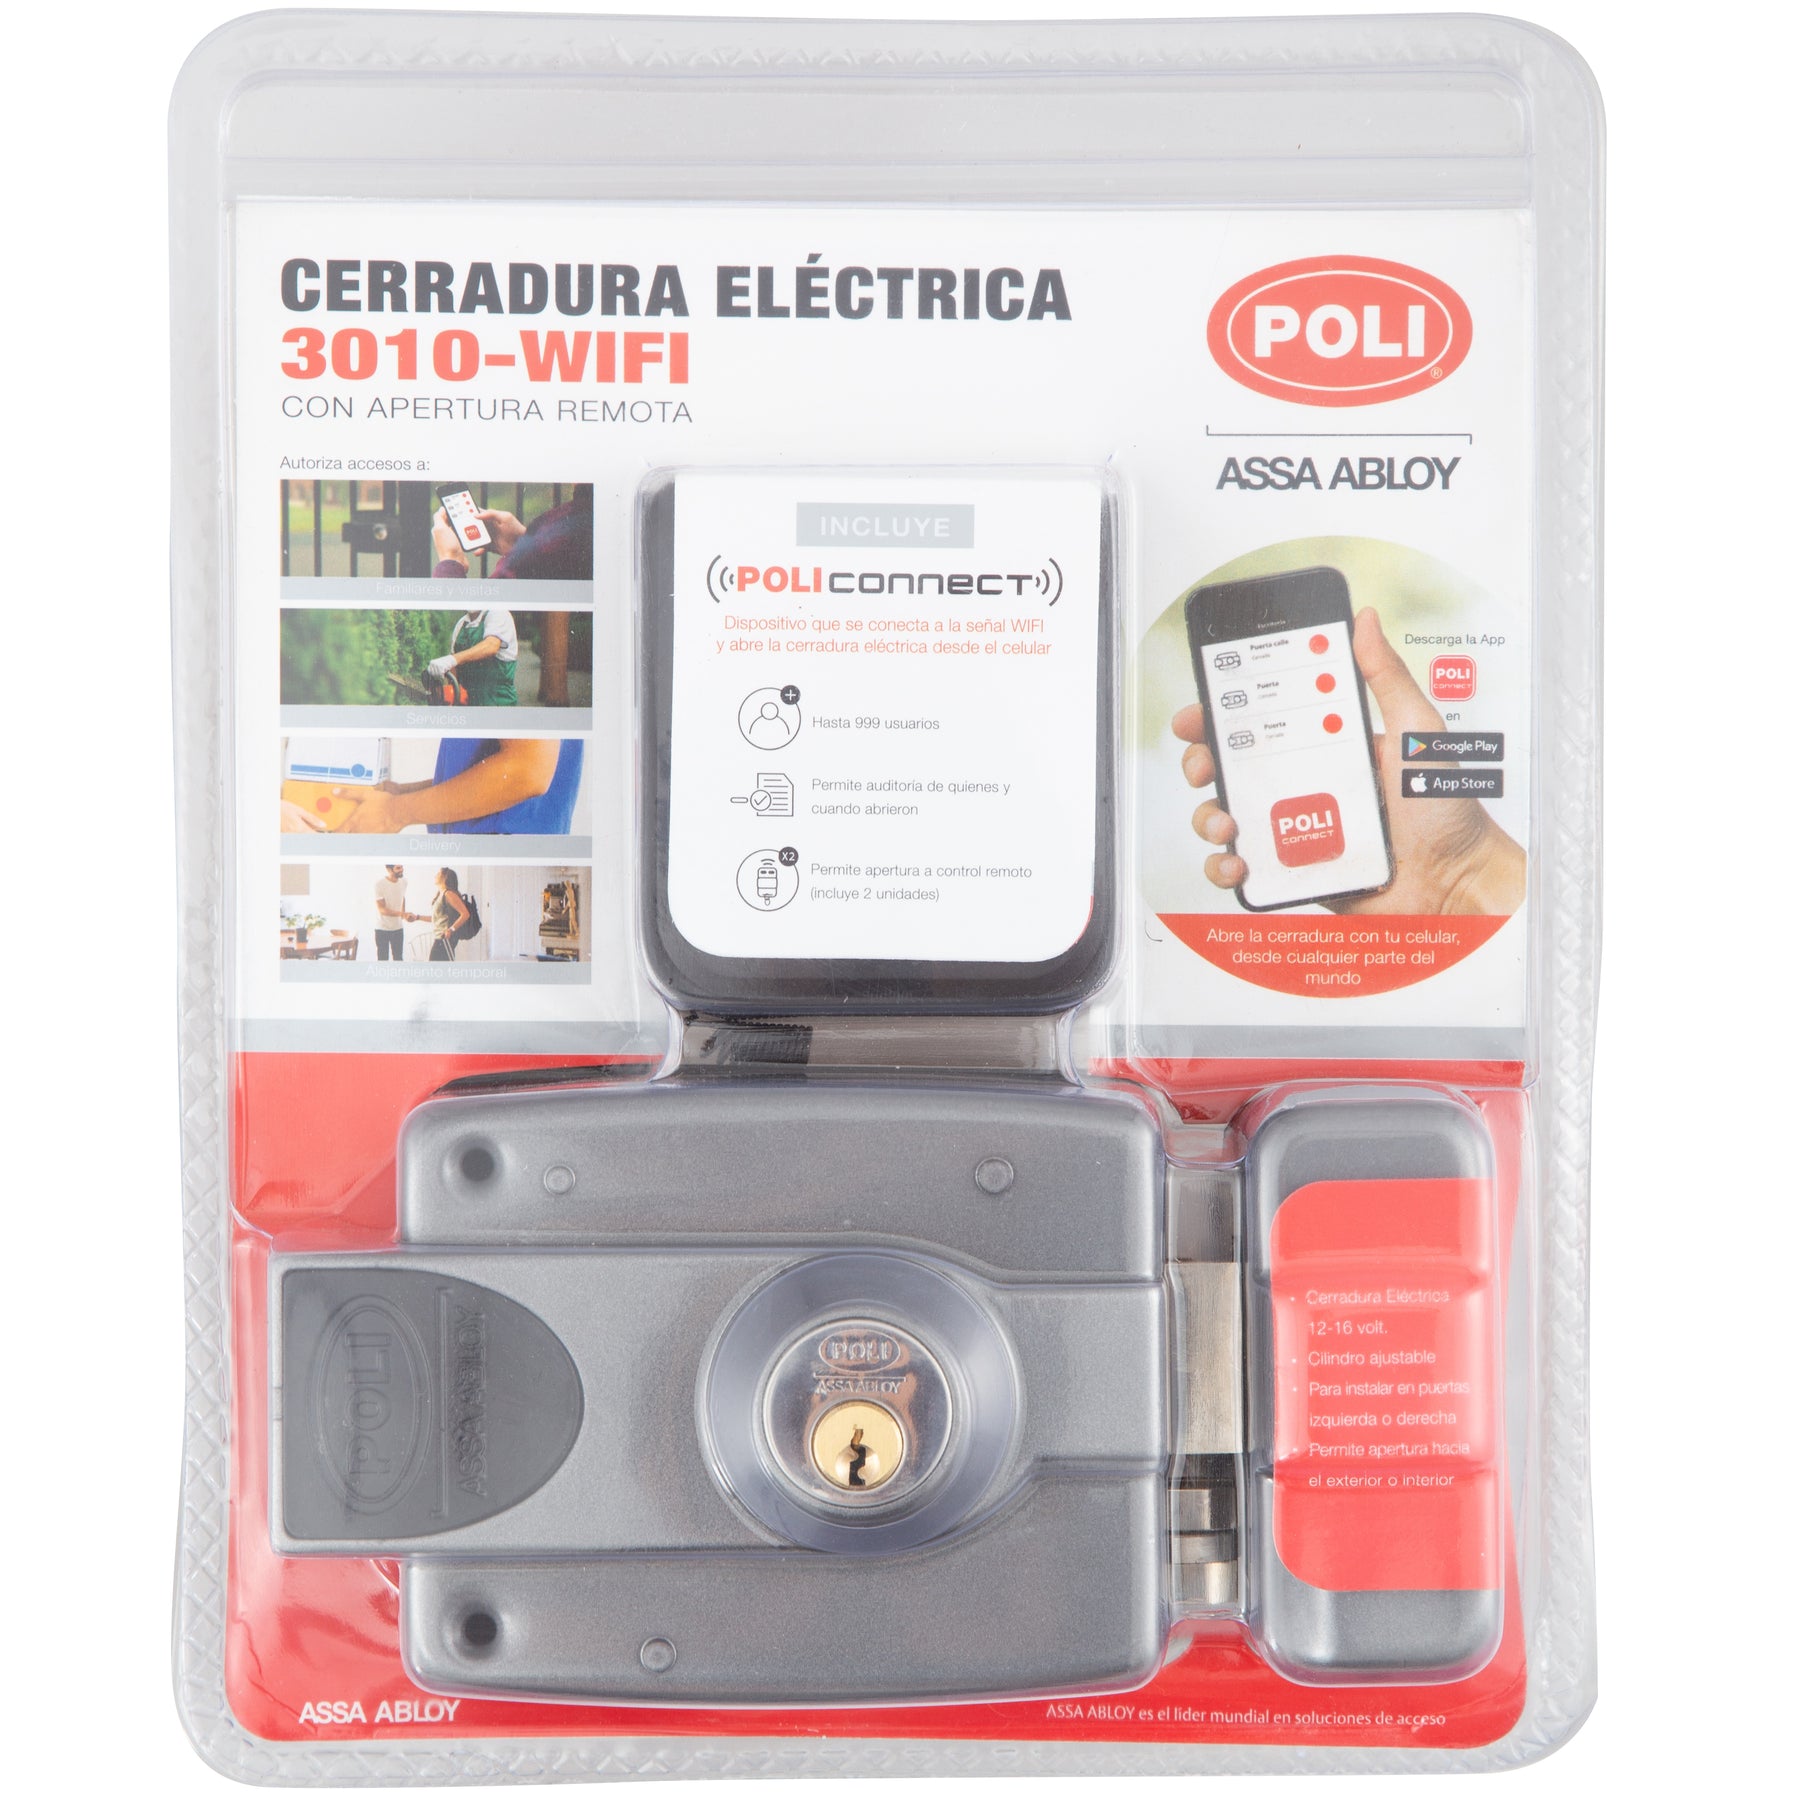 Cerradura 3010 Electrica wifi – Poli Chile